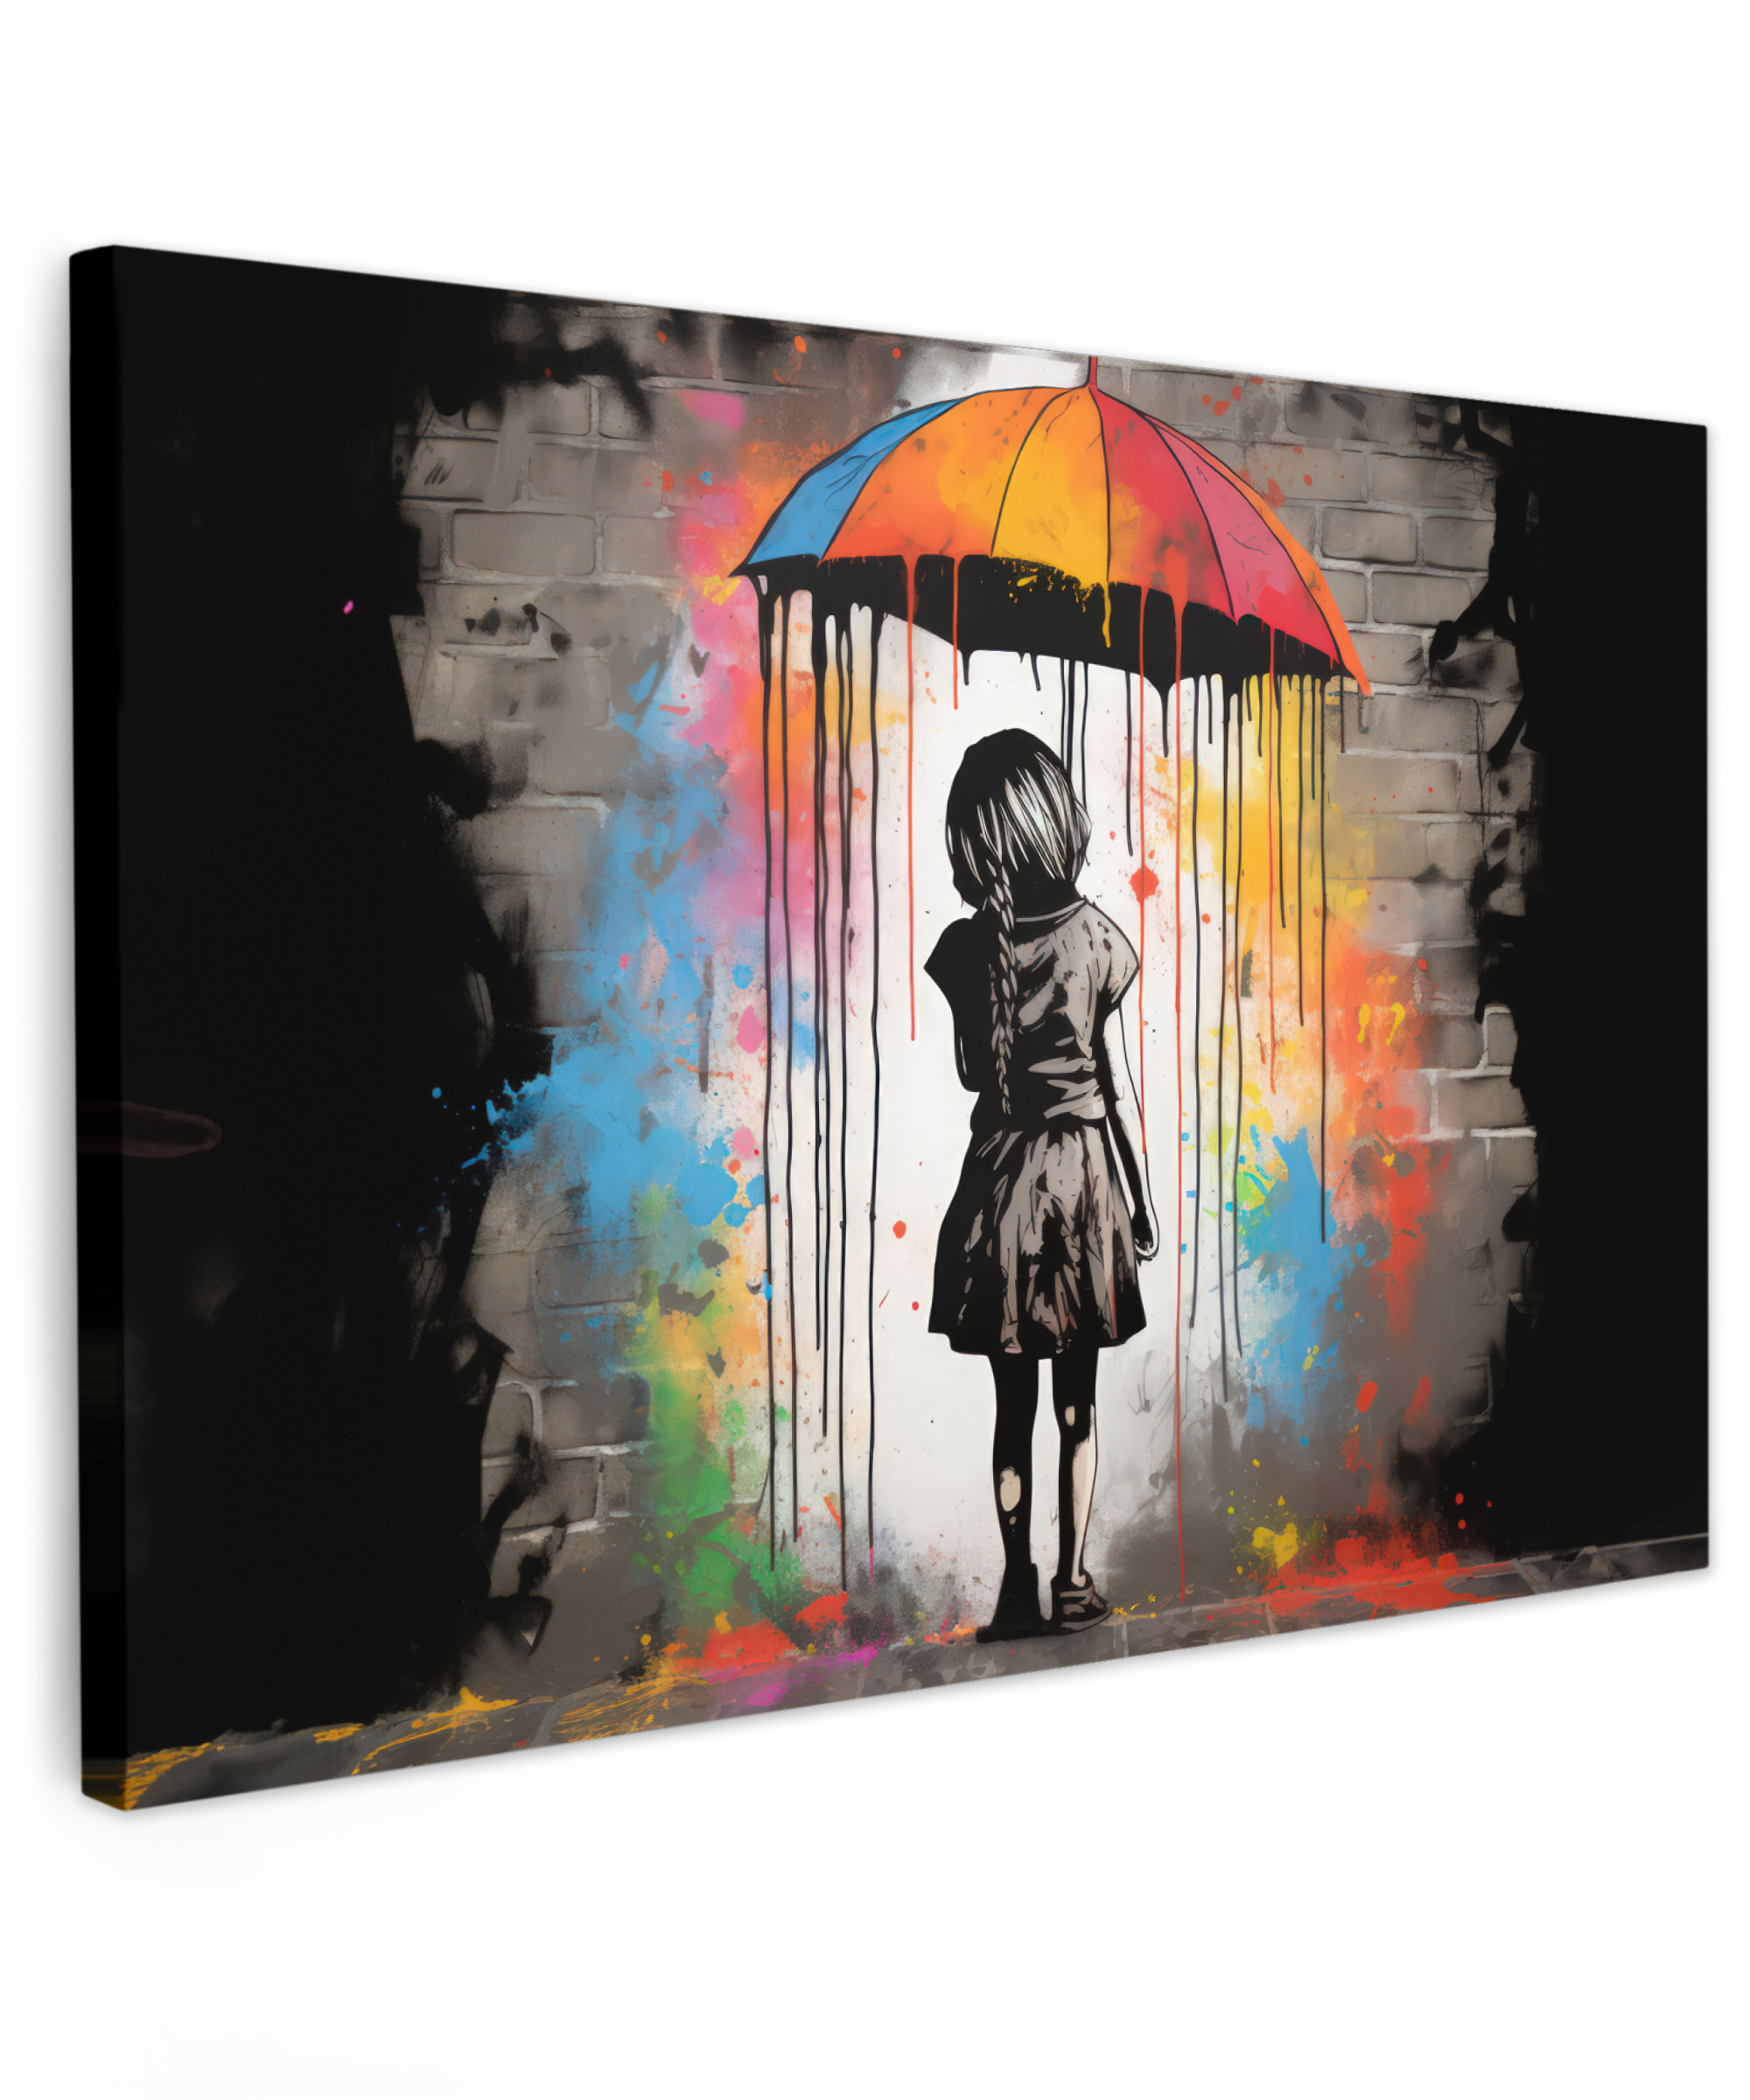 Leinwandbild - Mädchen - Kunst - Regenschirm - Graffiti - Farben - Wand